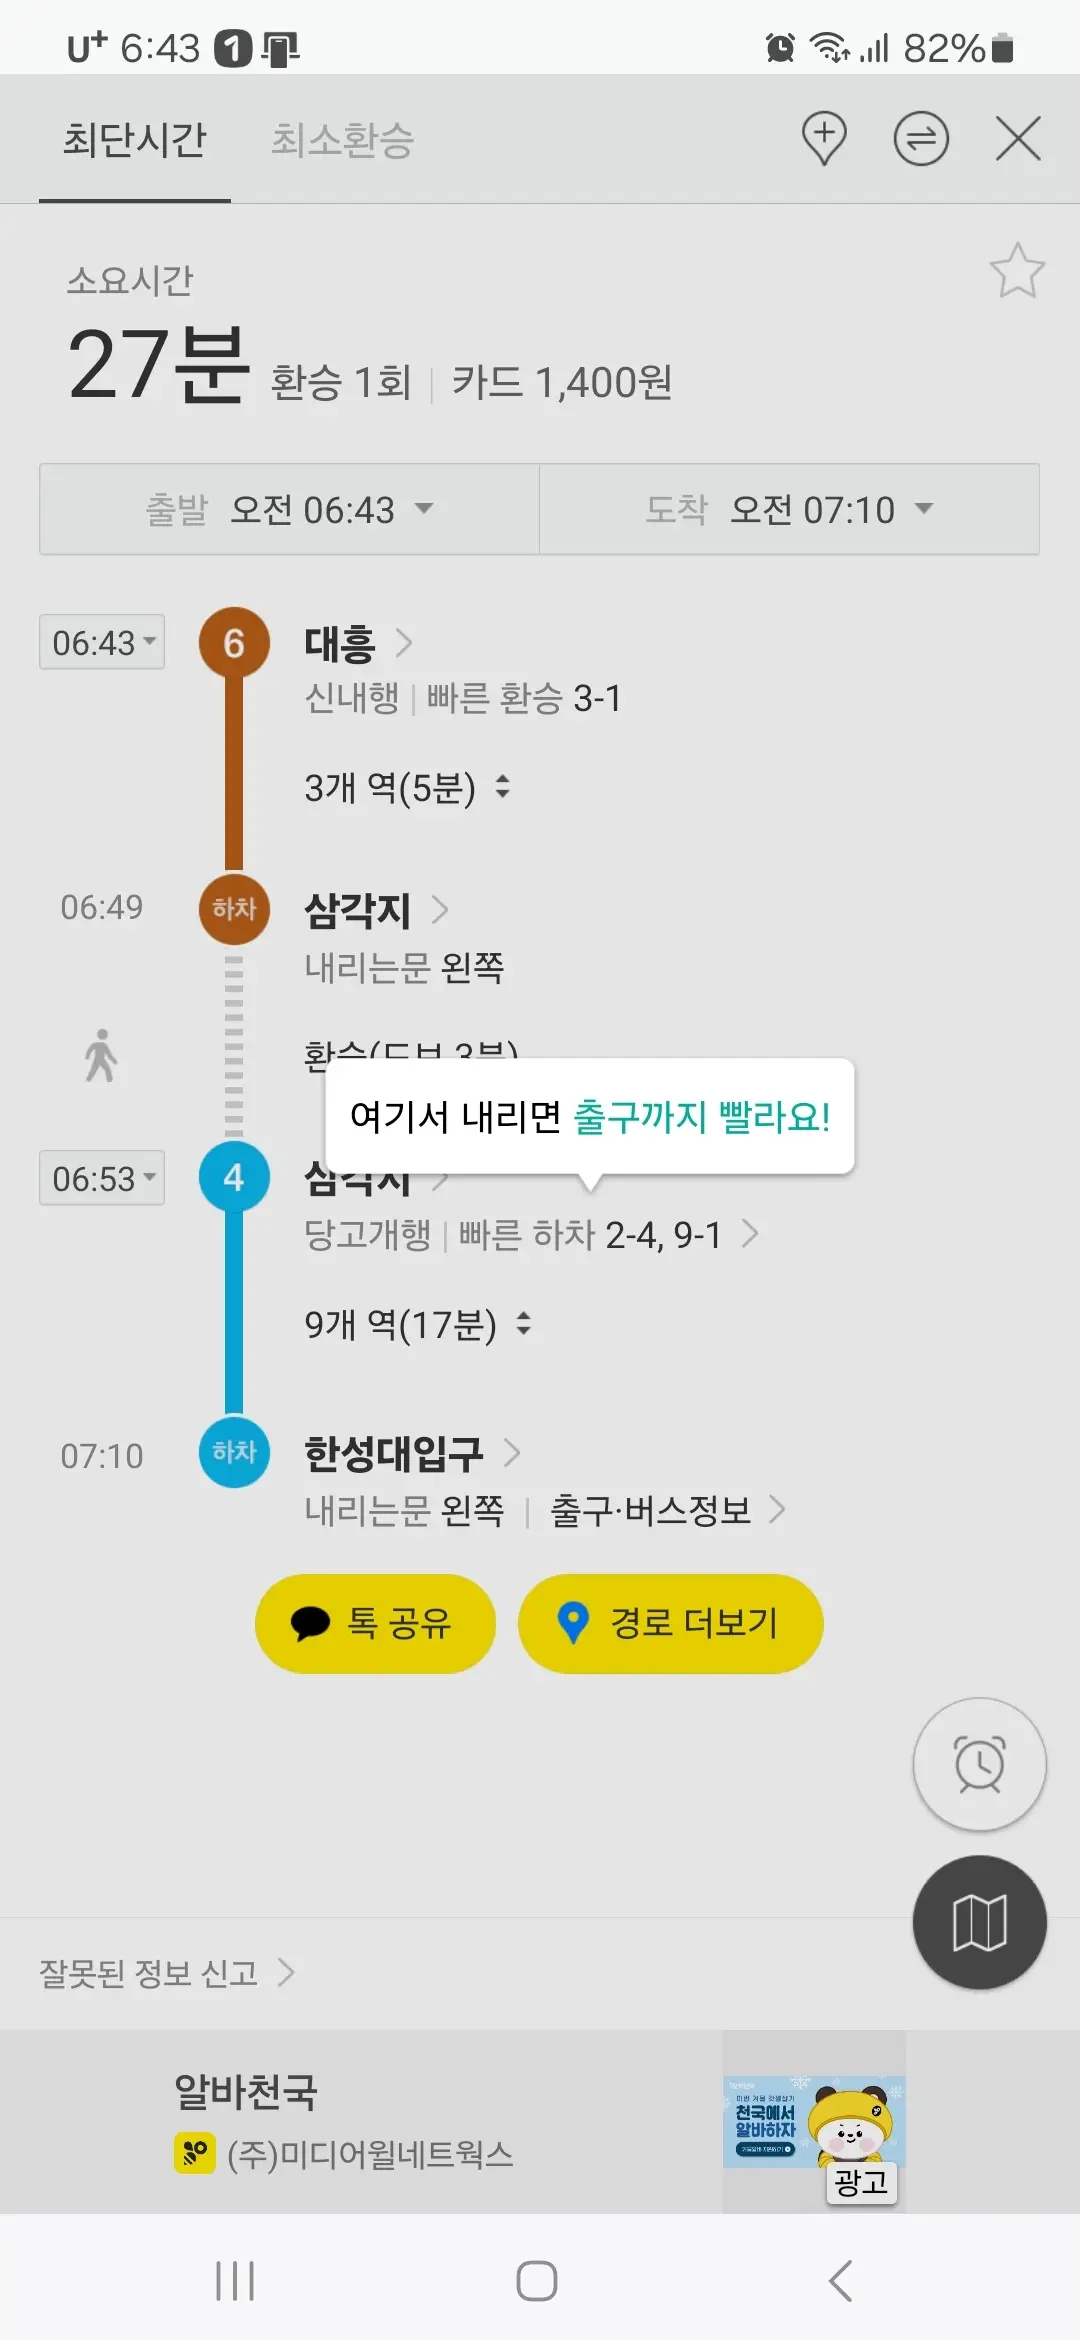 최단시간 최소 환승 구간